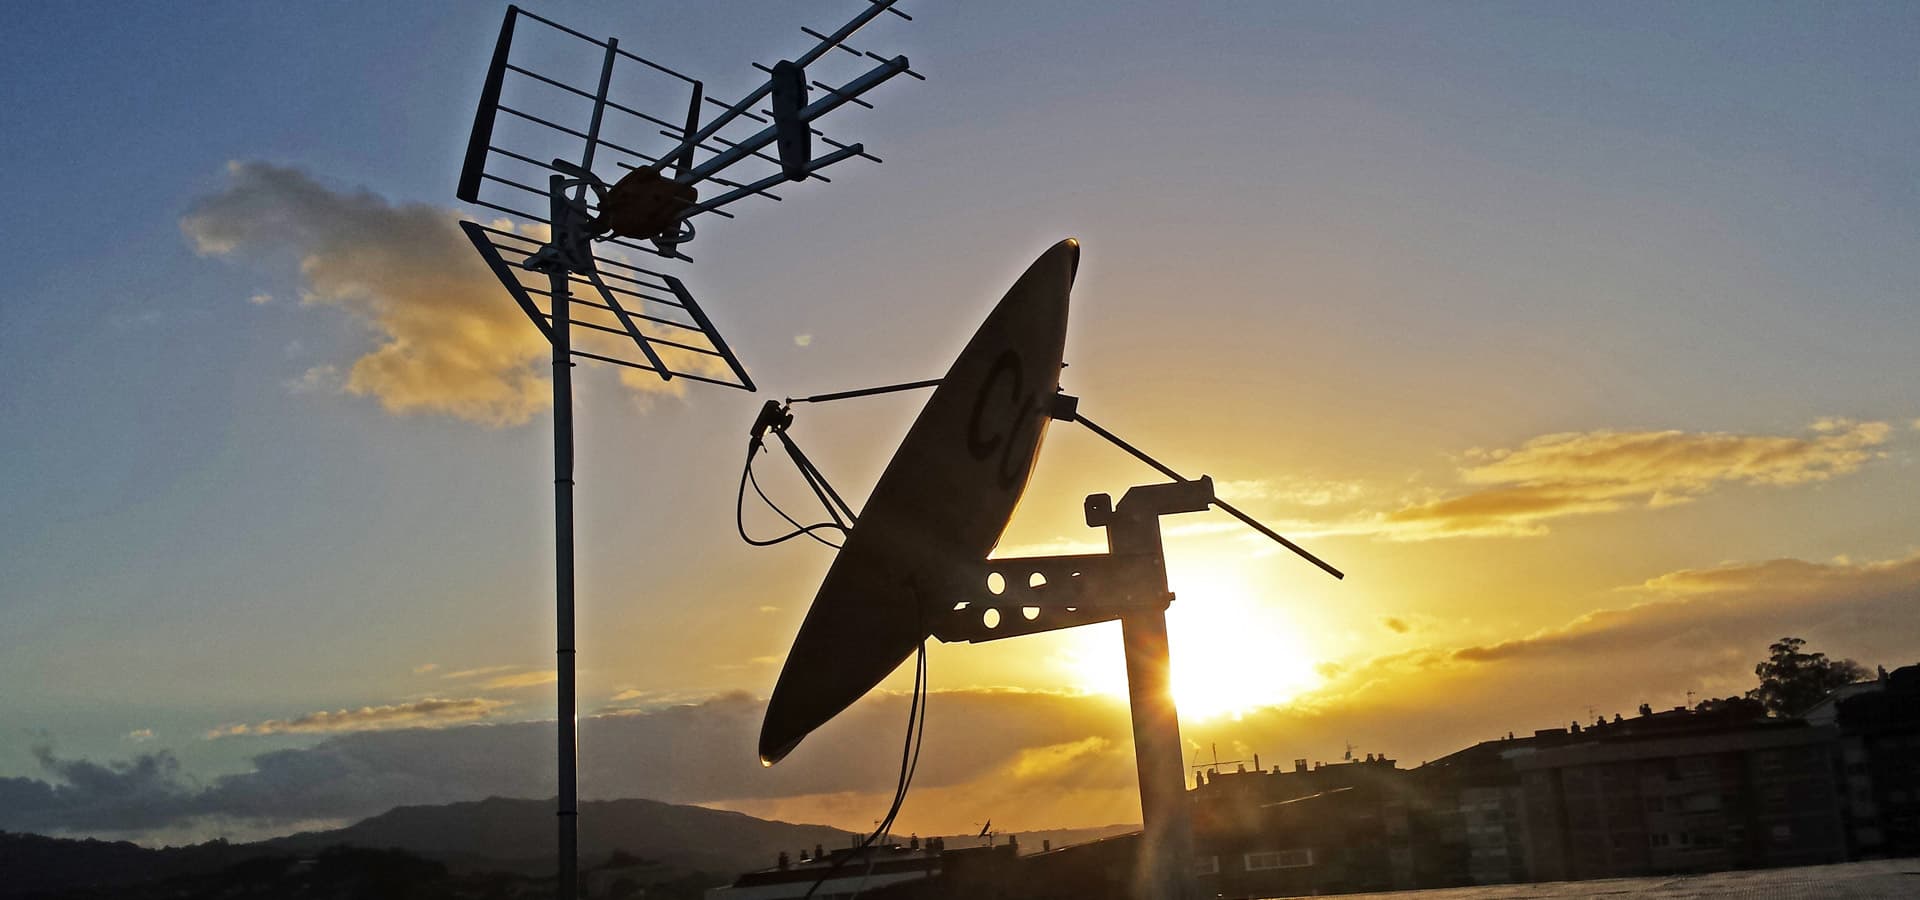 Tectel Telecomunicaciones - Telecomunicaciones en Vigo